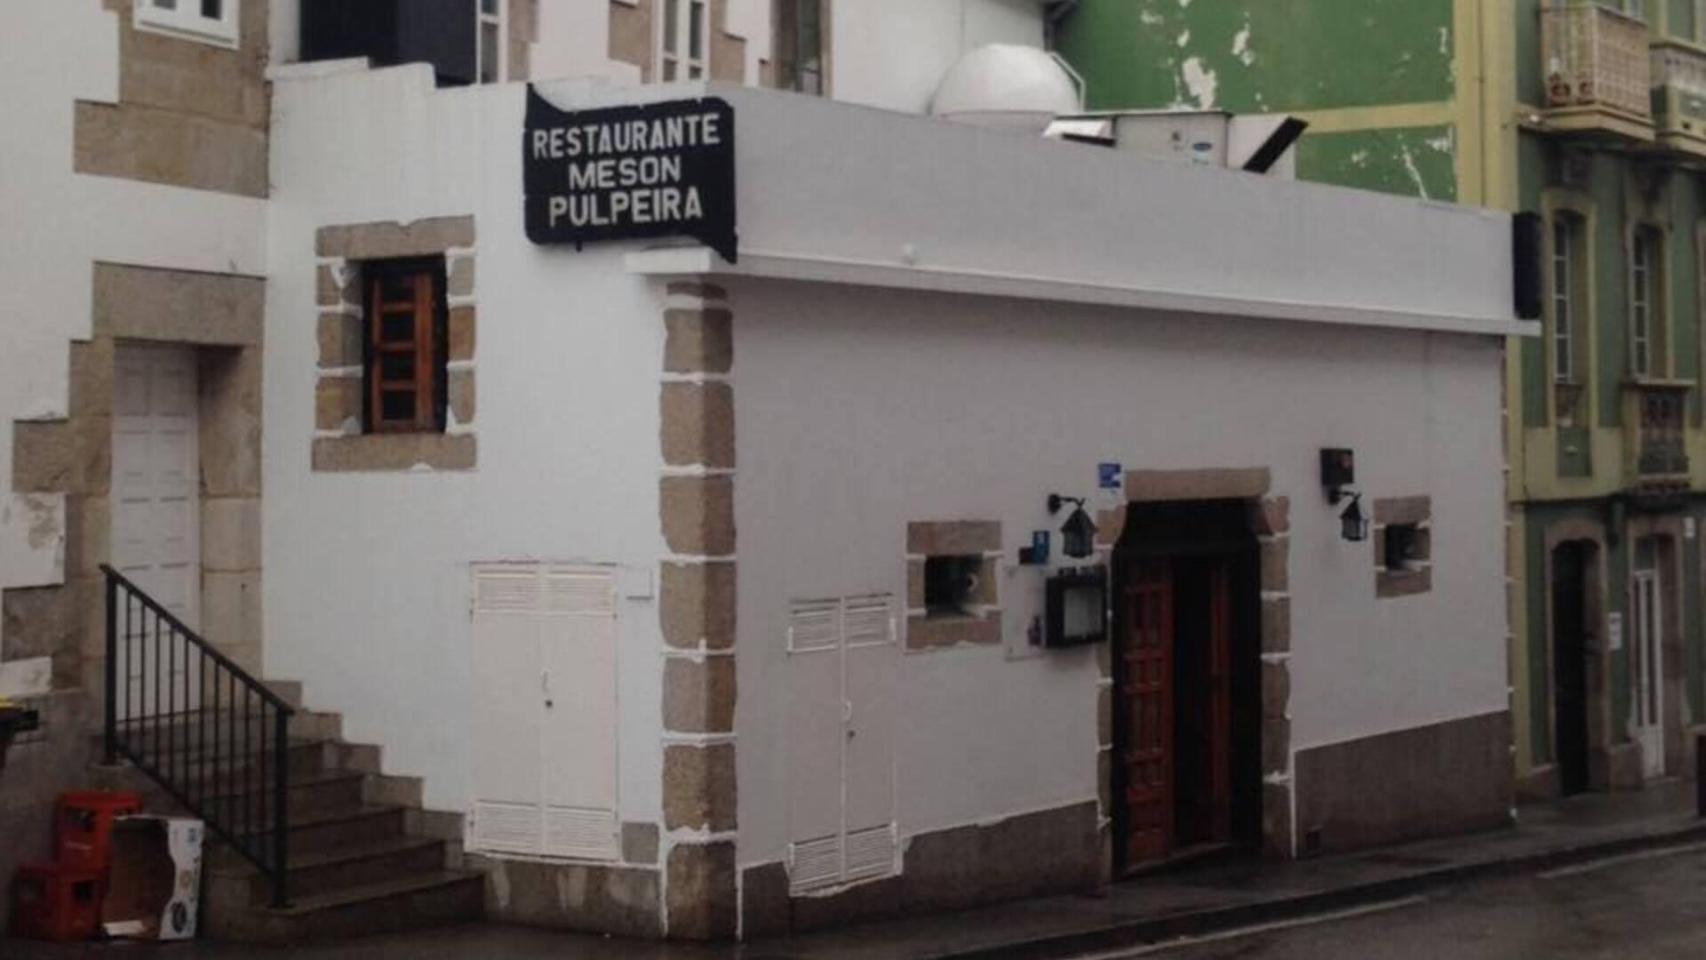 Adiós a la Pulpeira Pirri: Este mesón de Betanzos (A Coruña) cierra hoy después de 43 años